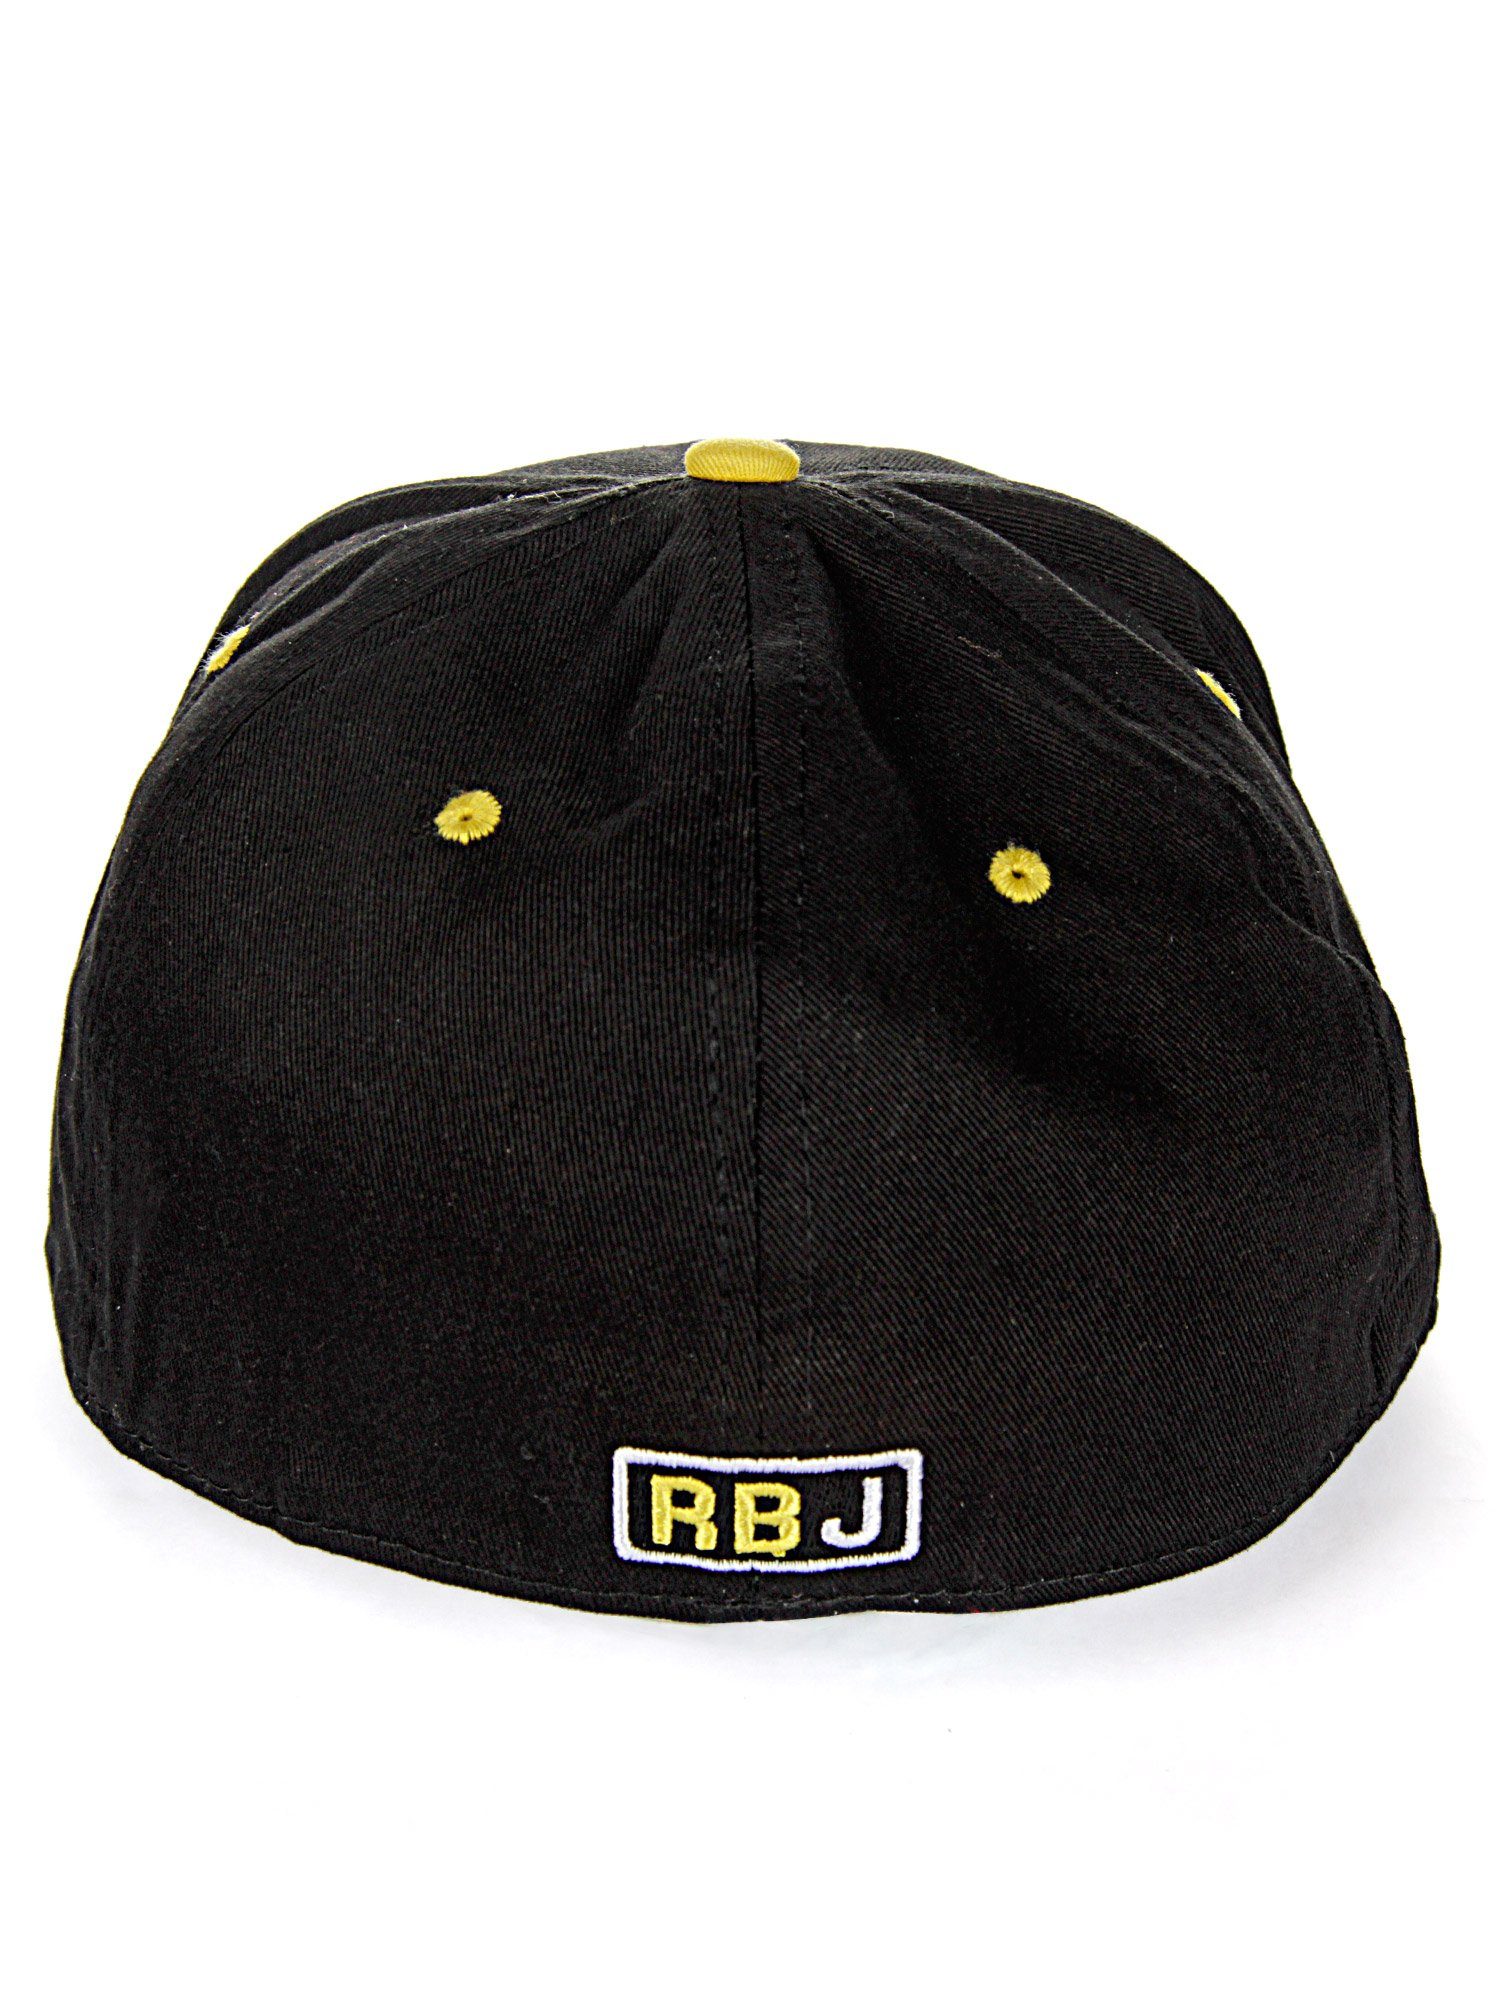 RedBridge Baseball Cap Durham Schirm kontrastfarbigem schwarz-gelb mit